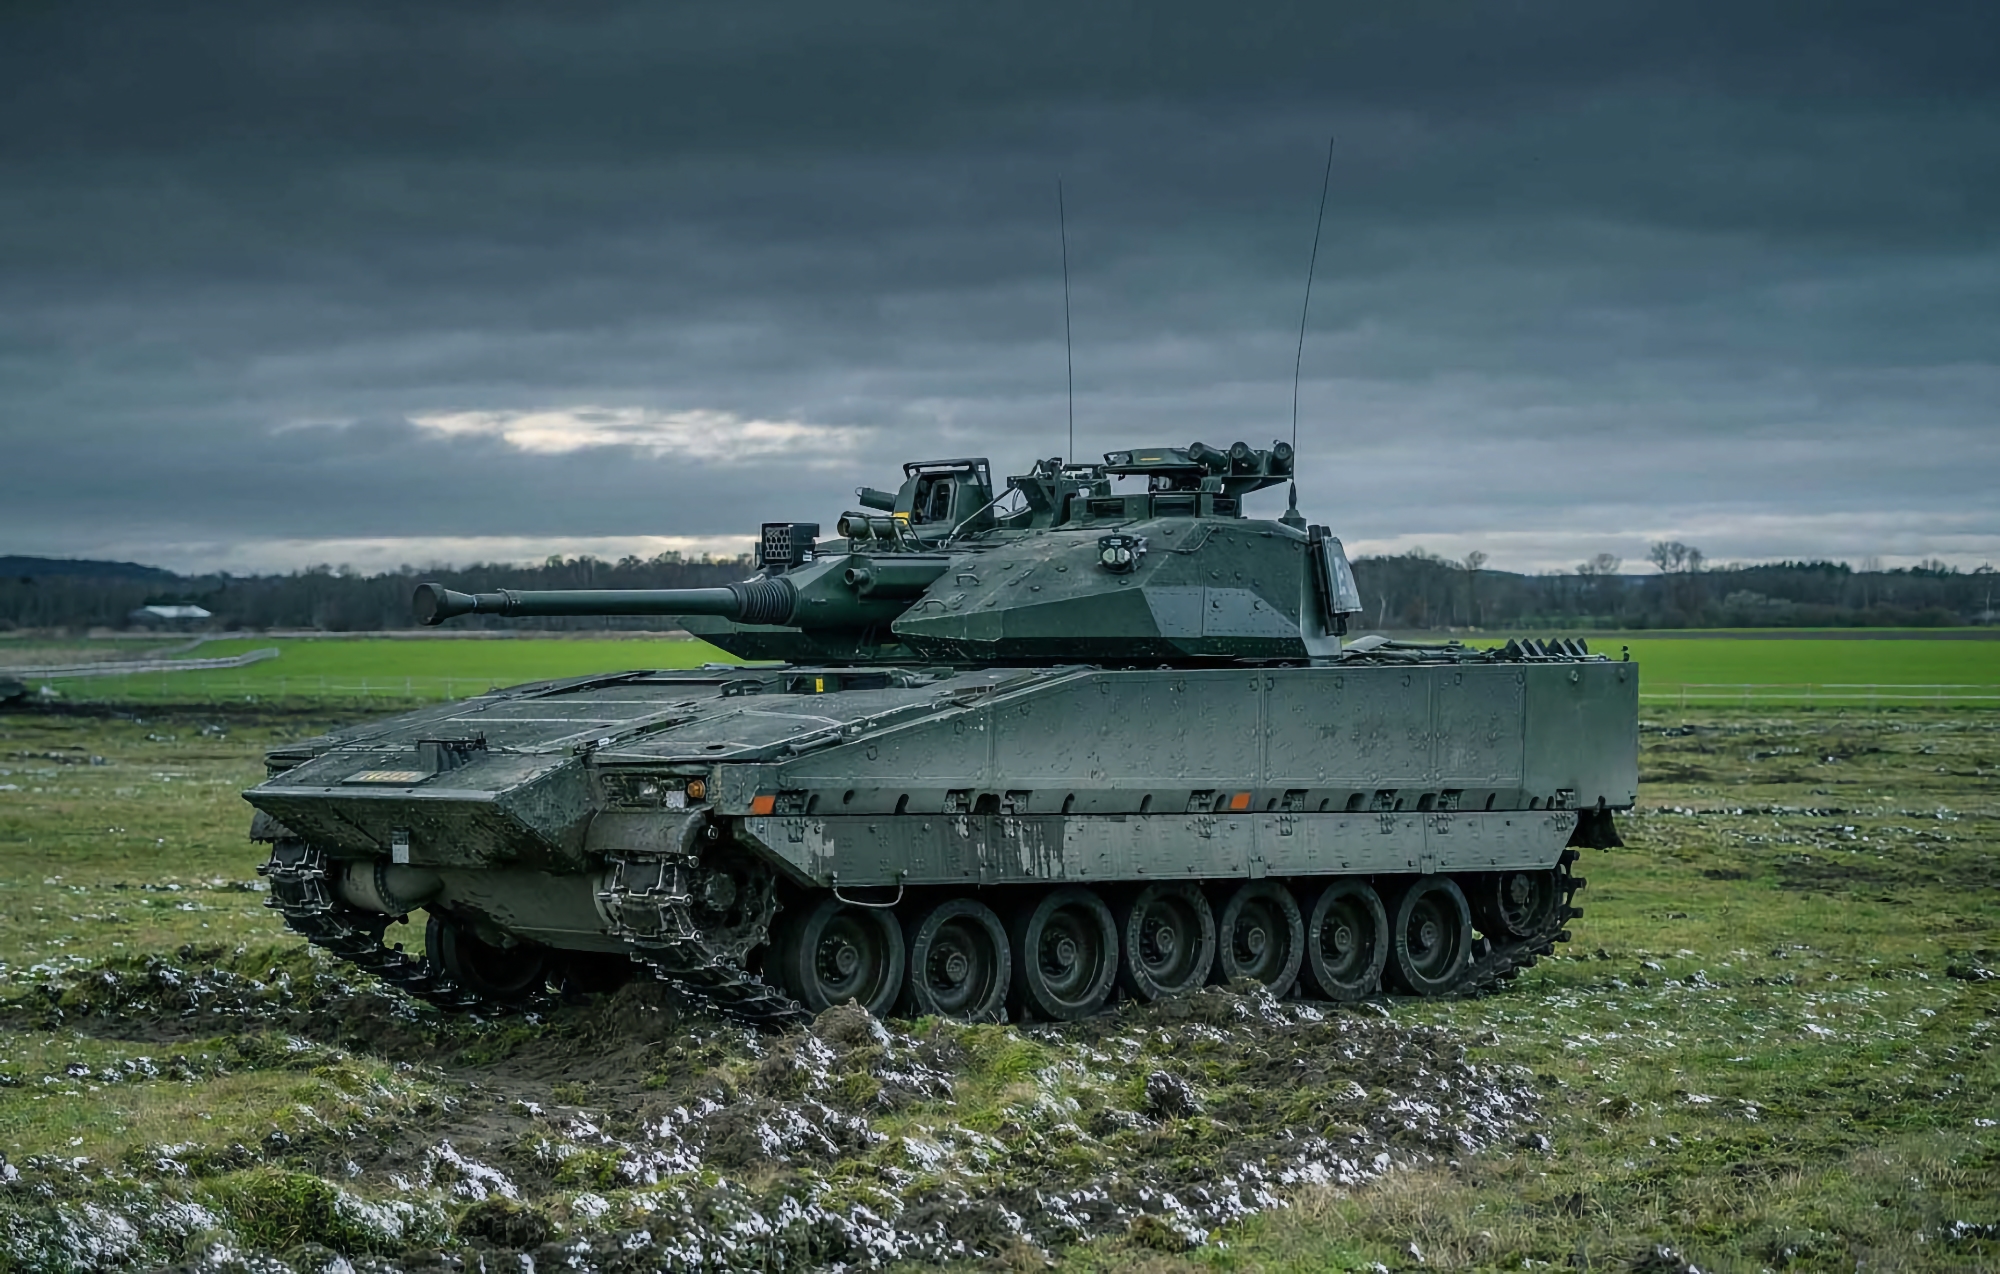 Чехия будет производить БМП CV90 для своих вооружённых сил